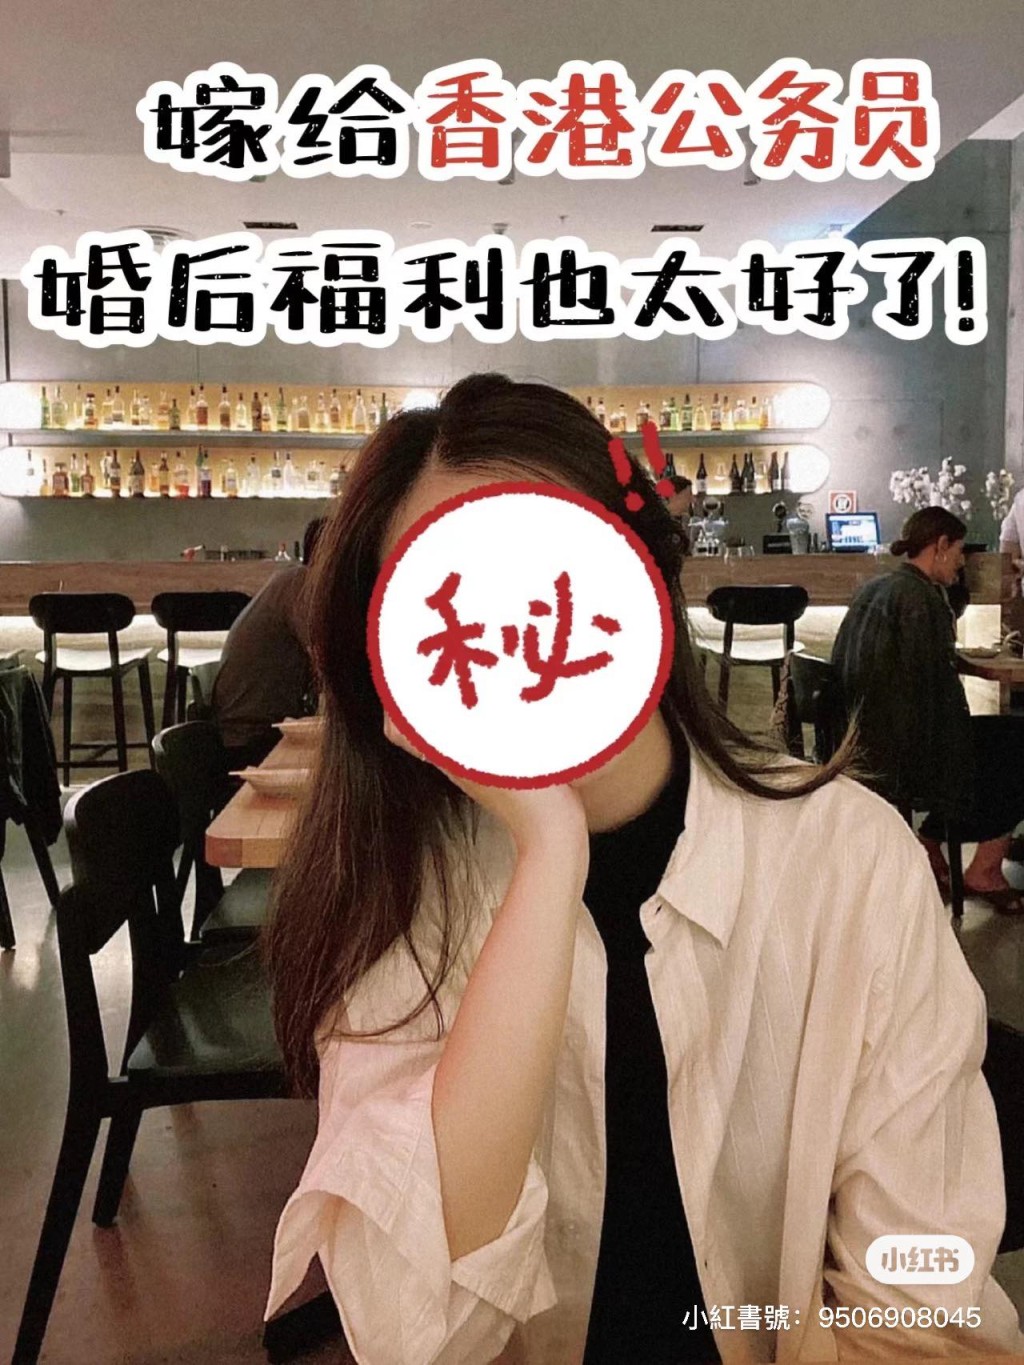 有婚姻配对公司在小红书分享一名33岁江苏女生的故事。小红书图片